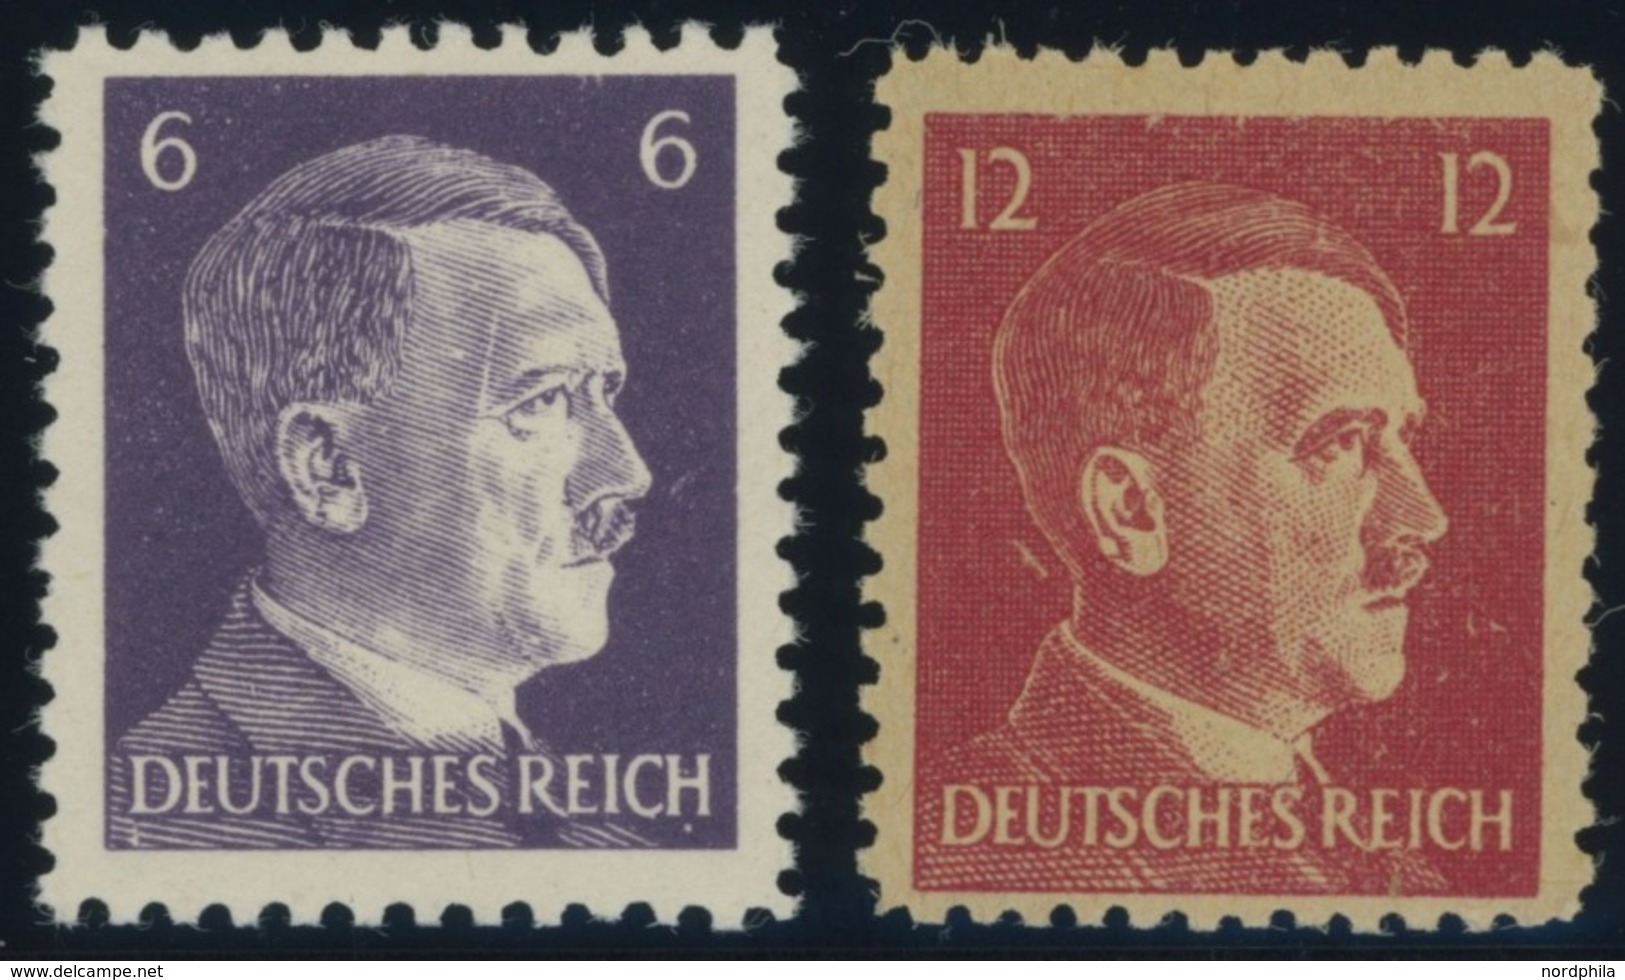 PROPAGANDAFÄLSCHUNGEN 15/6 **, Amerikanische Propagandamarken Für Deutschland: 6 Pf. Violett Und 12 Pf. Karmin Hitler, P - Besetzungen 1938-45